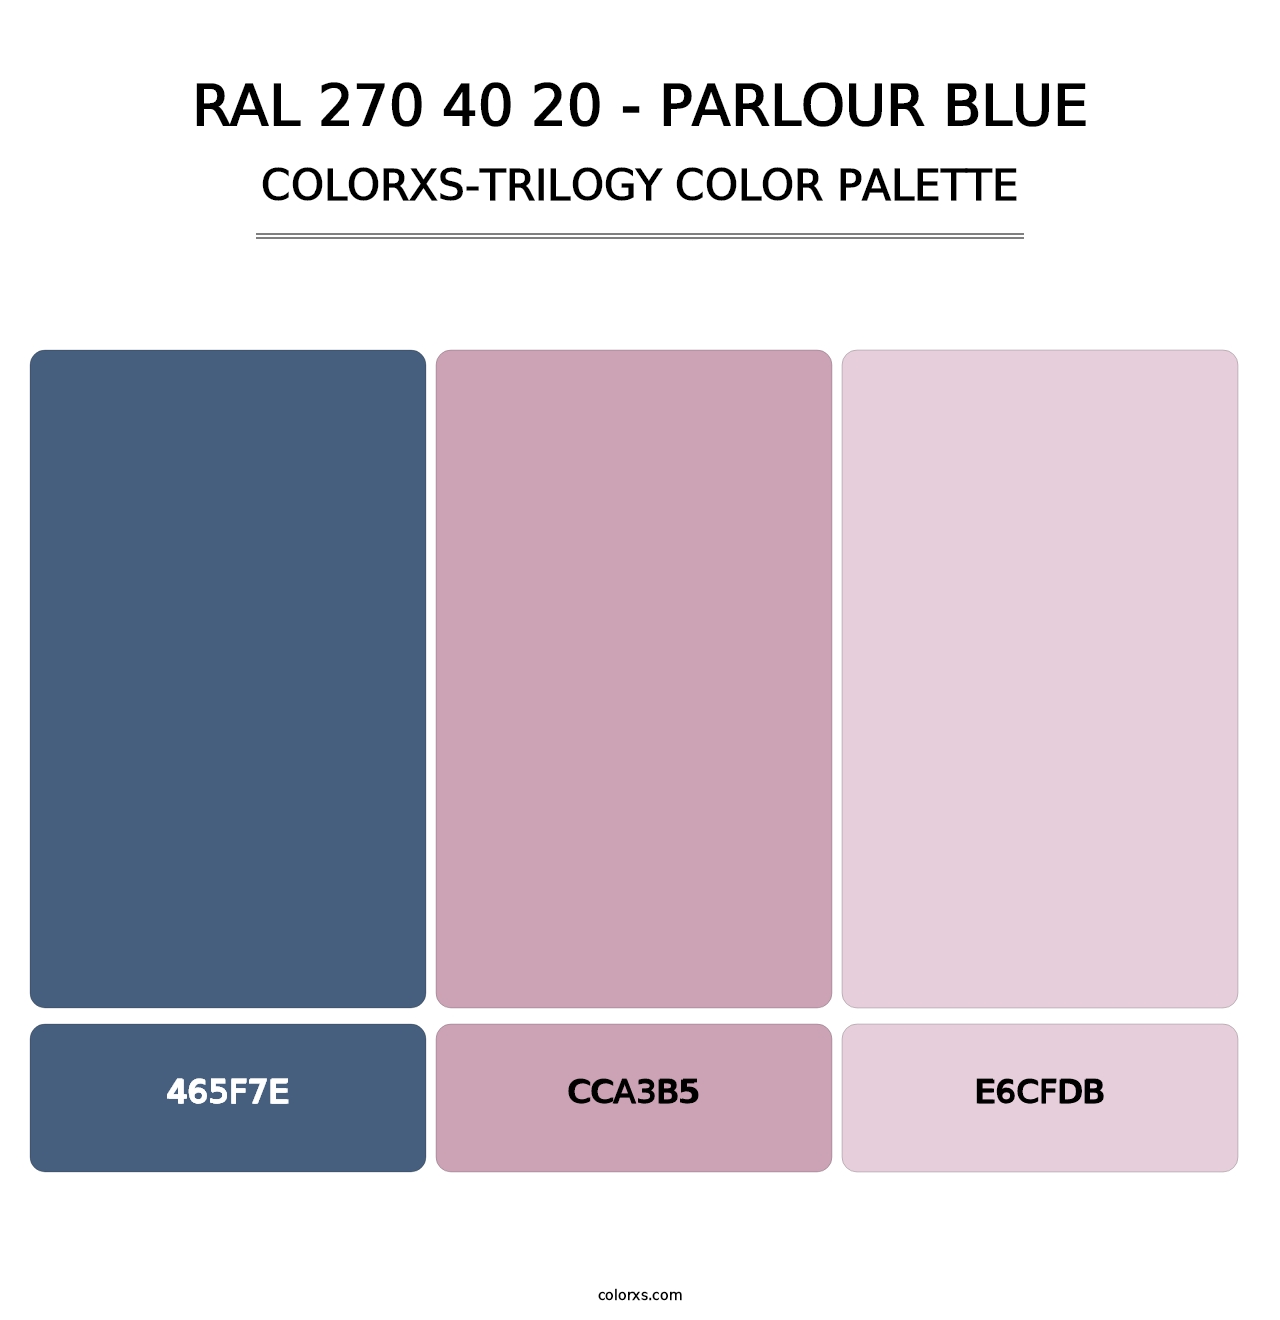 RAL 270 40 20 - Parlour Blue - Colorxs Trilogy Palette